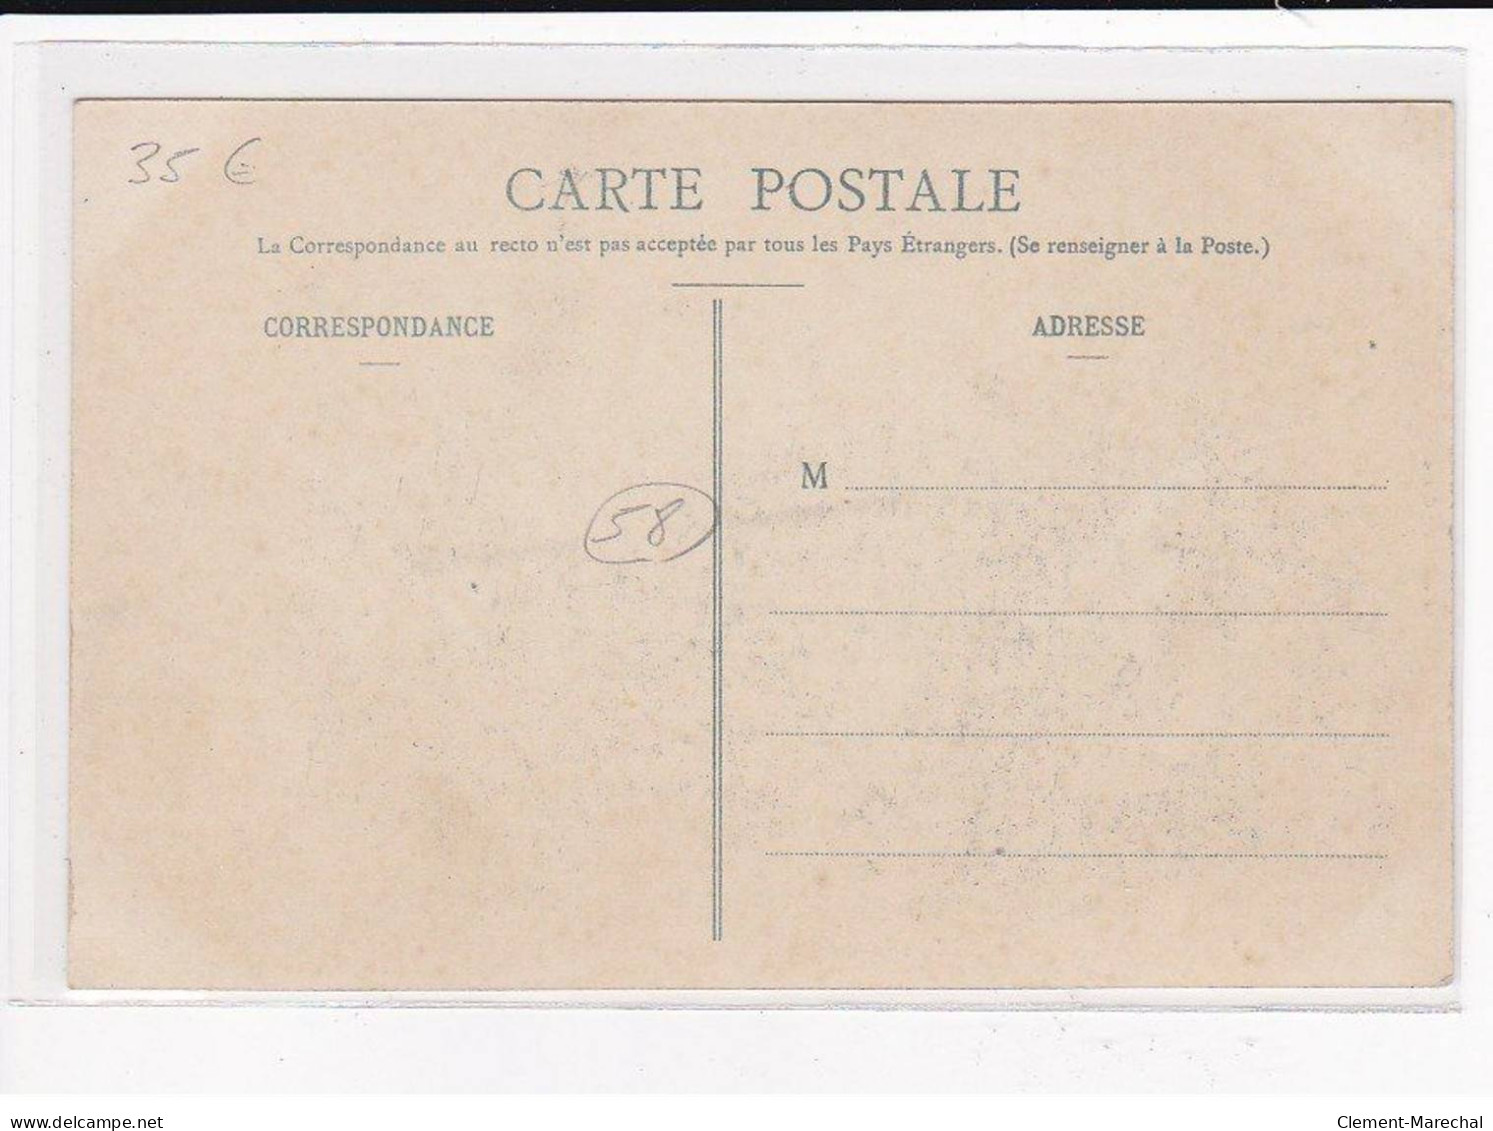 COSNE : Cavalcade Du 27 Septembre 1908, Char De La Ruche - Très Bon état - Cosne Cours Sur Loire